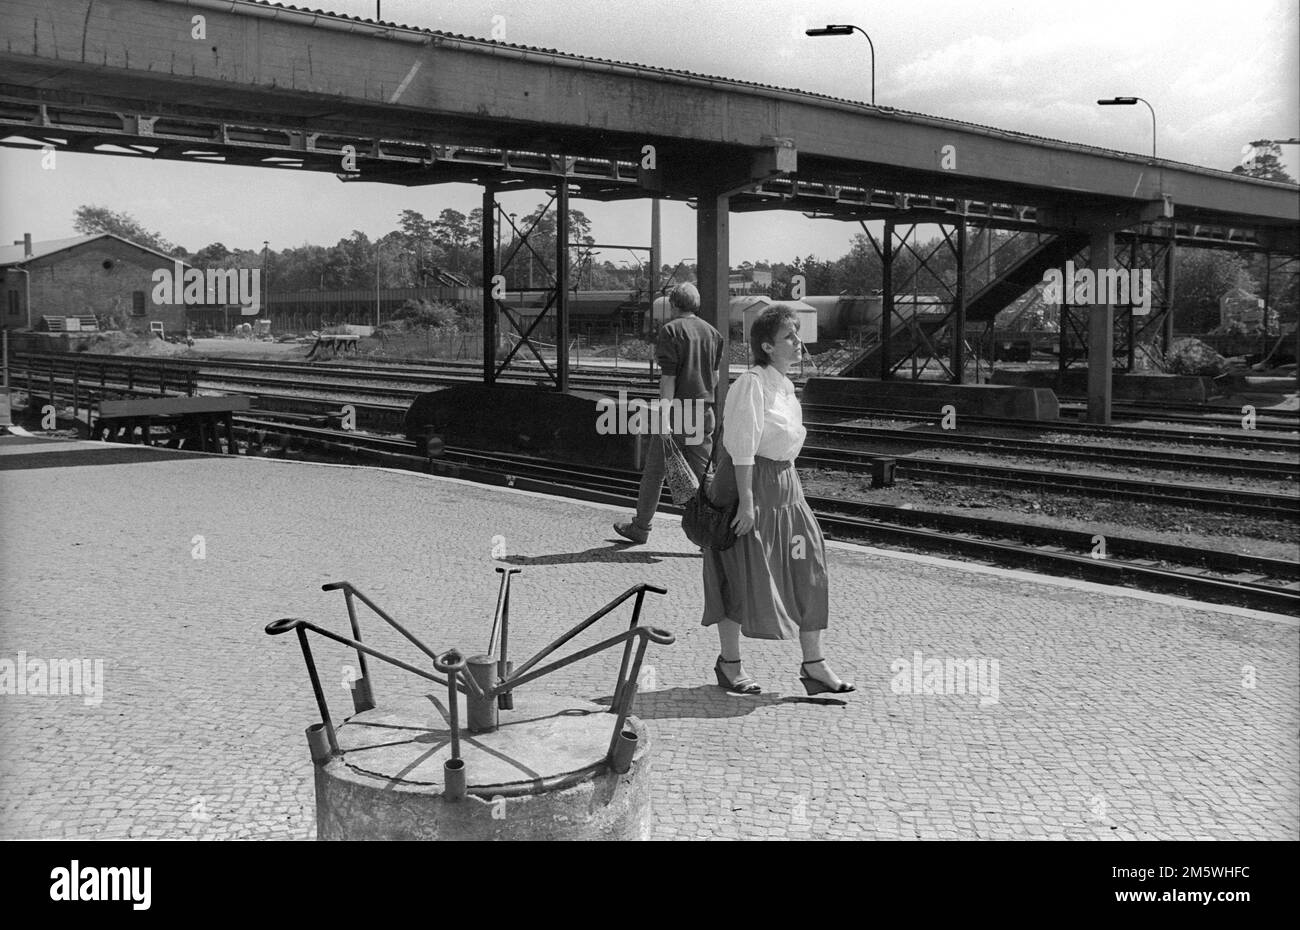 GDR, Berlin, 06. 05. 1990, Strausberg S-Bahn station, platform, woman in blouse and skirt, empty flag holder Stock Photo